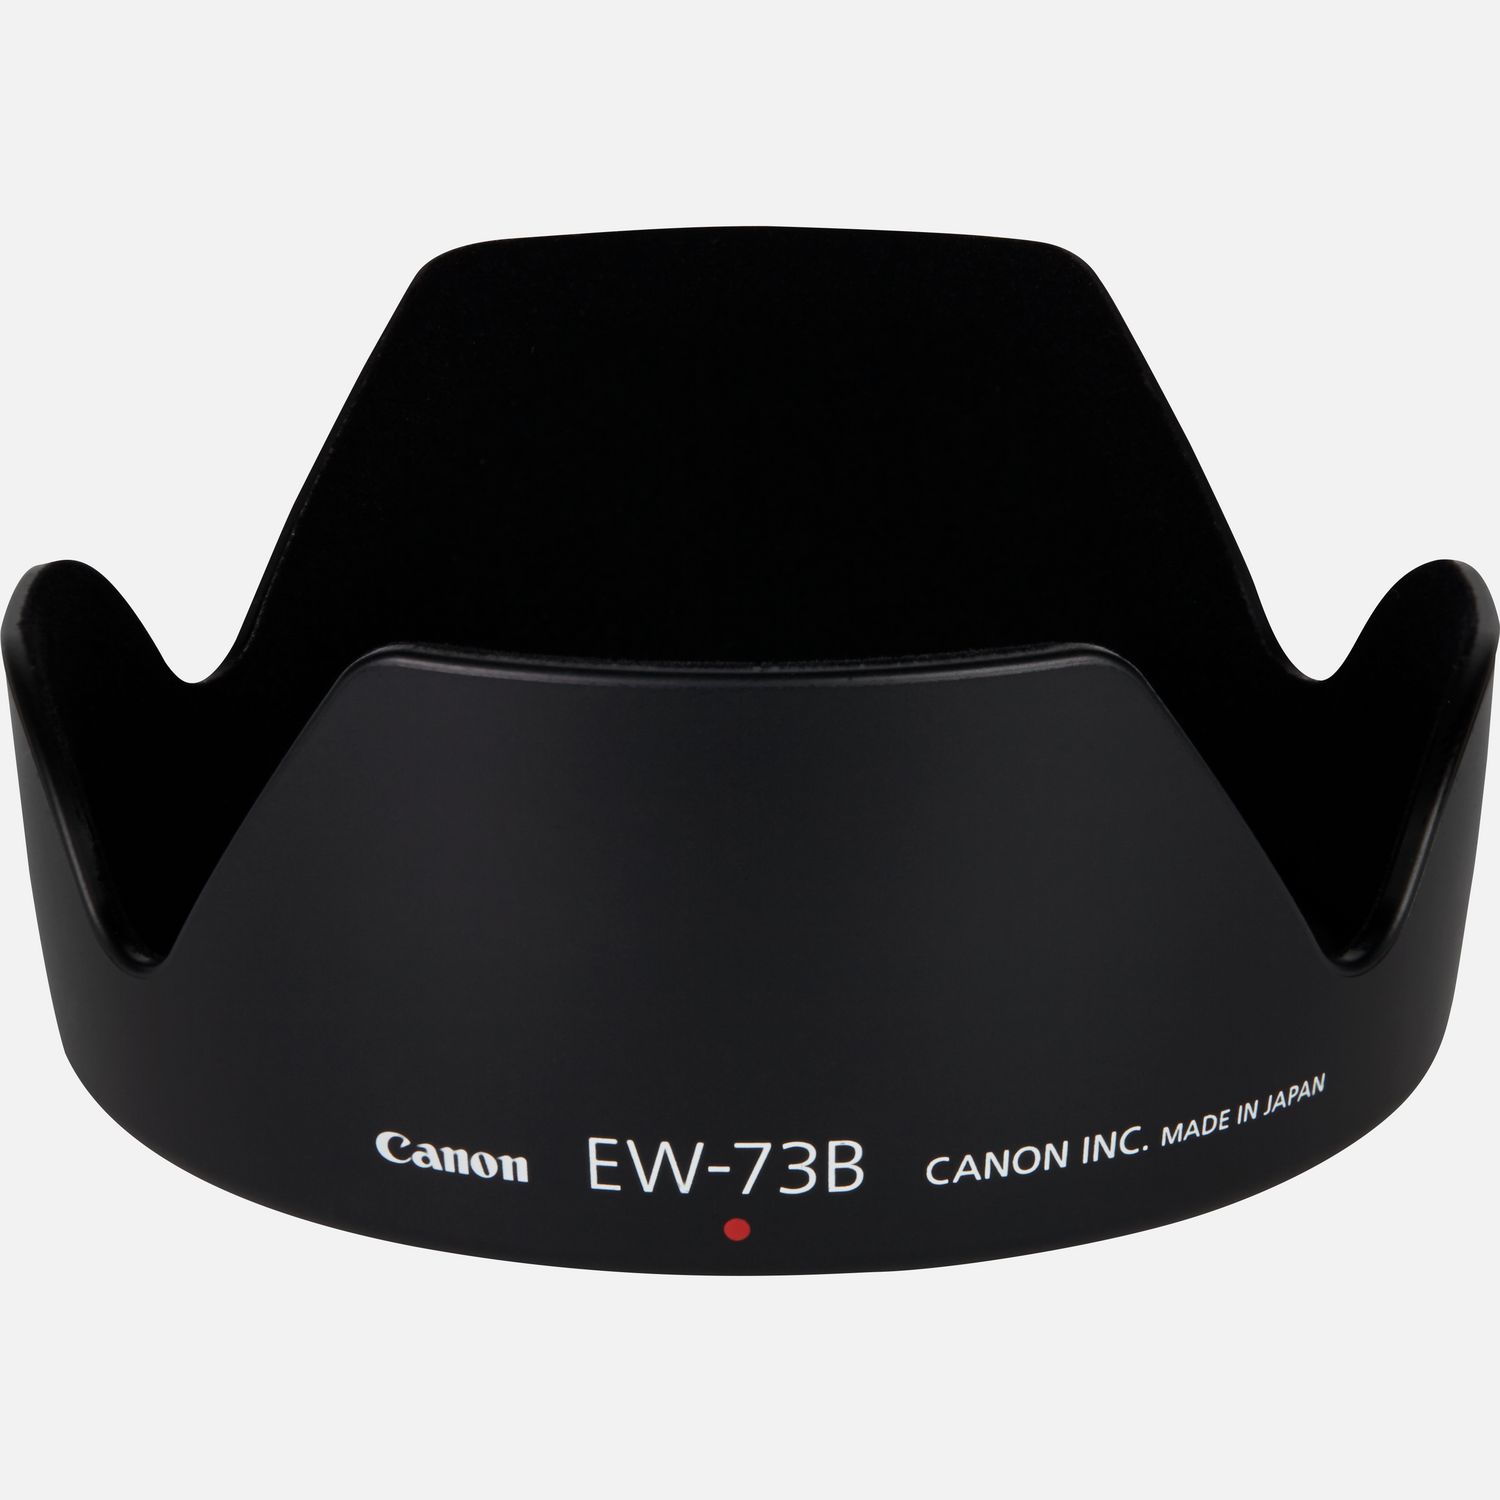 Die Streulichtblende EW-73B verhindert das Eintreten von Streulicht in das Objektiv und reduziert damit die Gefahr, dass Lichtreflexionen die Bildqualitt beeintrchtigen. Sie ist hilfreich bei Aufnahmen in das Licht hinein und schtzt zudem die Frontlinse des Objektivs vor versehentlicher Beschdigung.  Vorteile      Schutz vor Streulicht          Schtzt die Frontlinse des Objektivs          Zum Platzsparen in der Kameratasche kann diese umgekehrt angebracht werden          Hochwertig in Design und Konstruktion          Lieferumfang       EW-73B Streulichtblende            Kompatibilitt       EF-S 17-85mm f/4-5.6 IS USM         EF-S 18-135mm f/3.5-5.6 IS STM         EF-S 18135mm f/3.55.6 IS